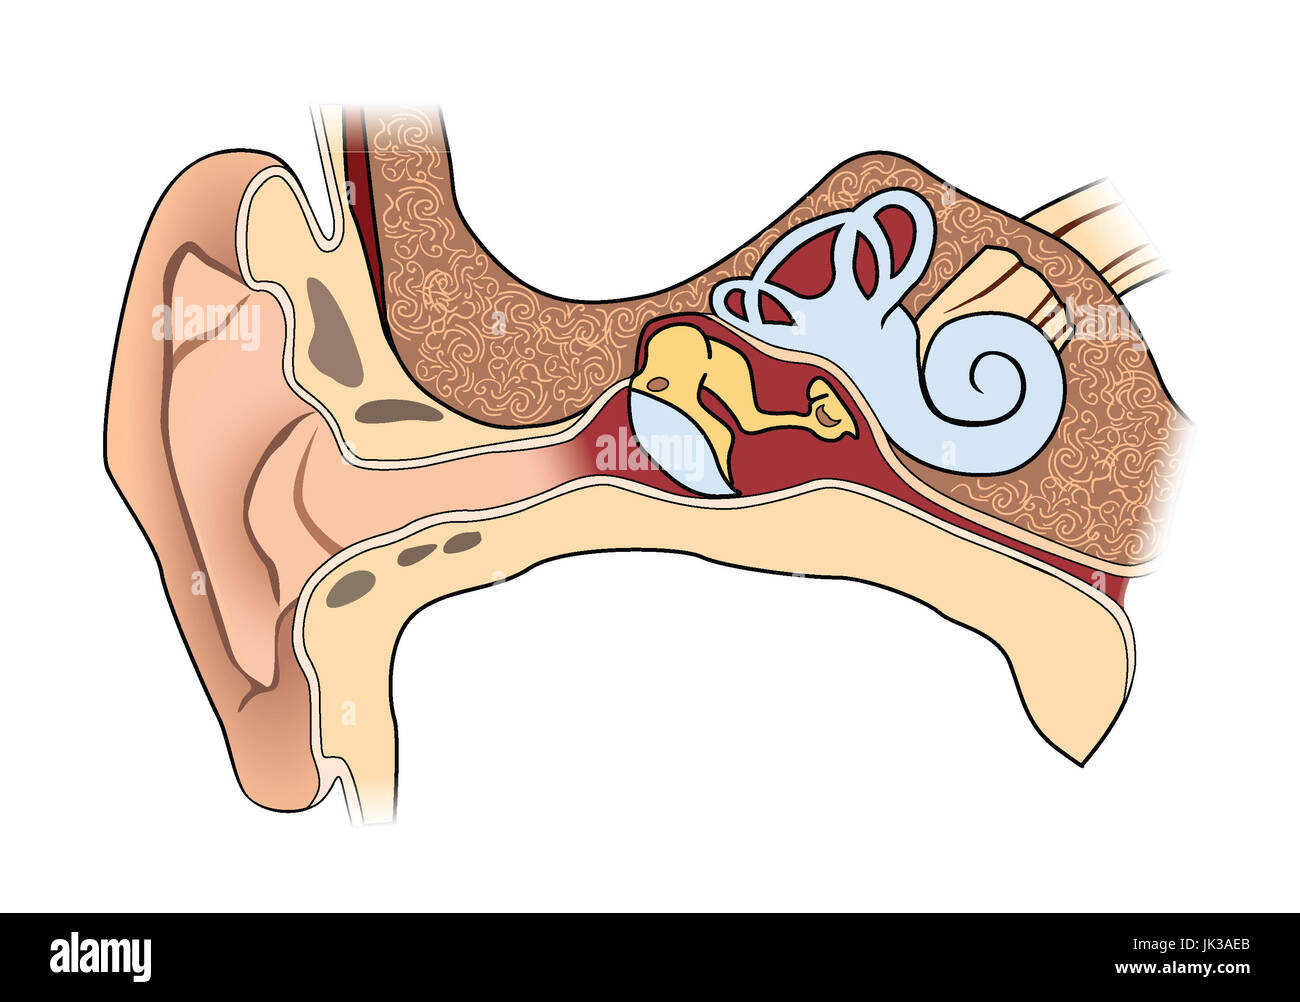 Menschliche ohr Anatomie. medizinische Zeichen des Ohr Struktur  Stockfotografie - Alamy